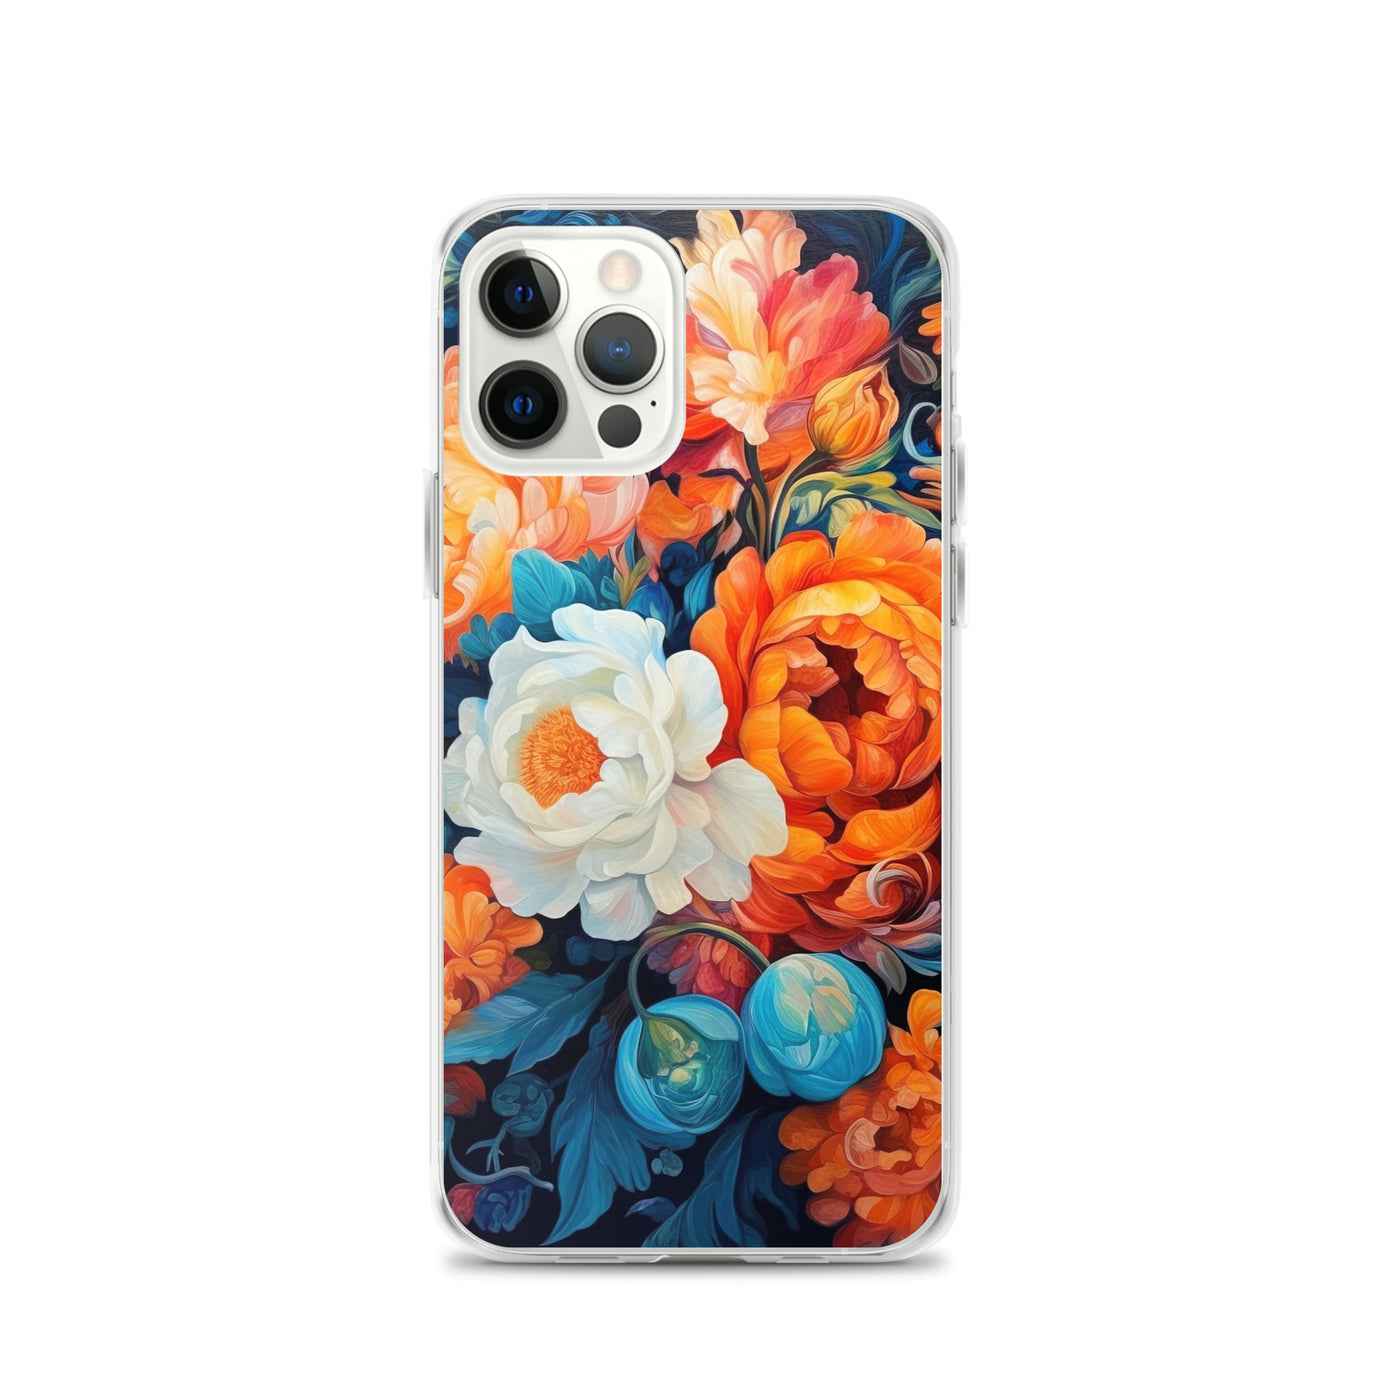 Bunte Blumen - Schöne Malerei - iPhone Schutzhülle (durchsichtig) camping xxx iPhone 12 Pro